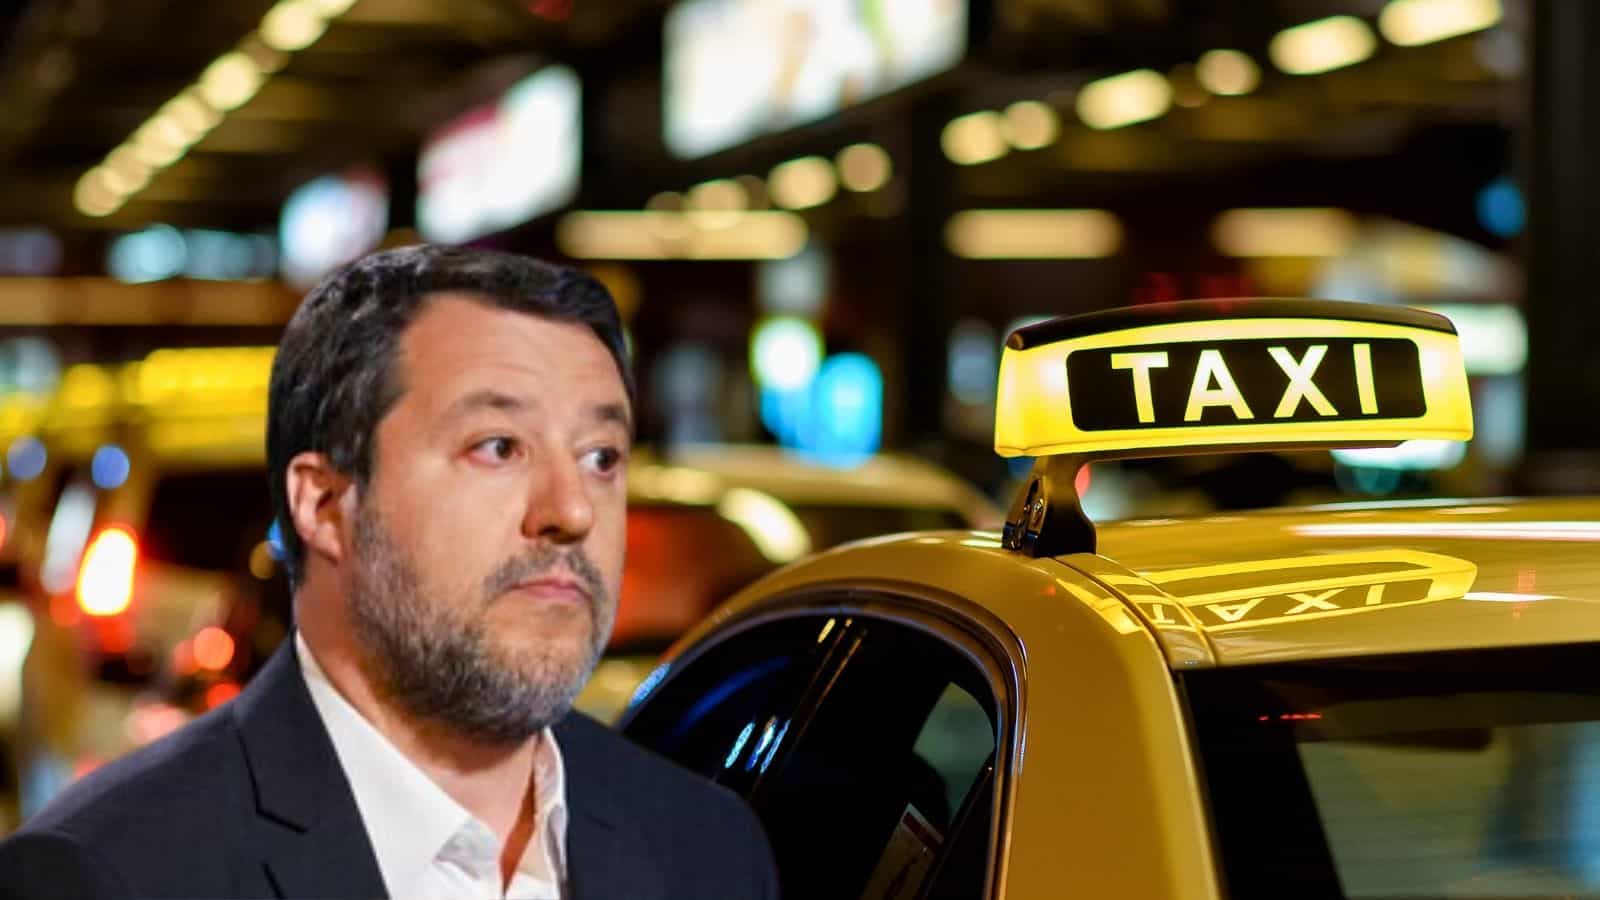 Taxi e NCC: polemiche e critiche per le nuove regole del ministro Salvini